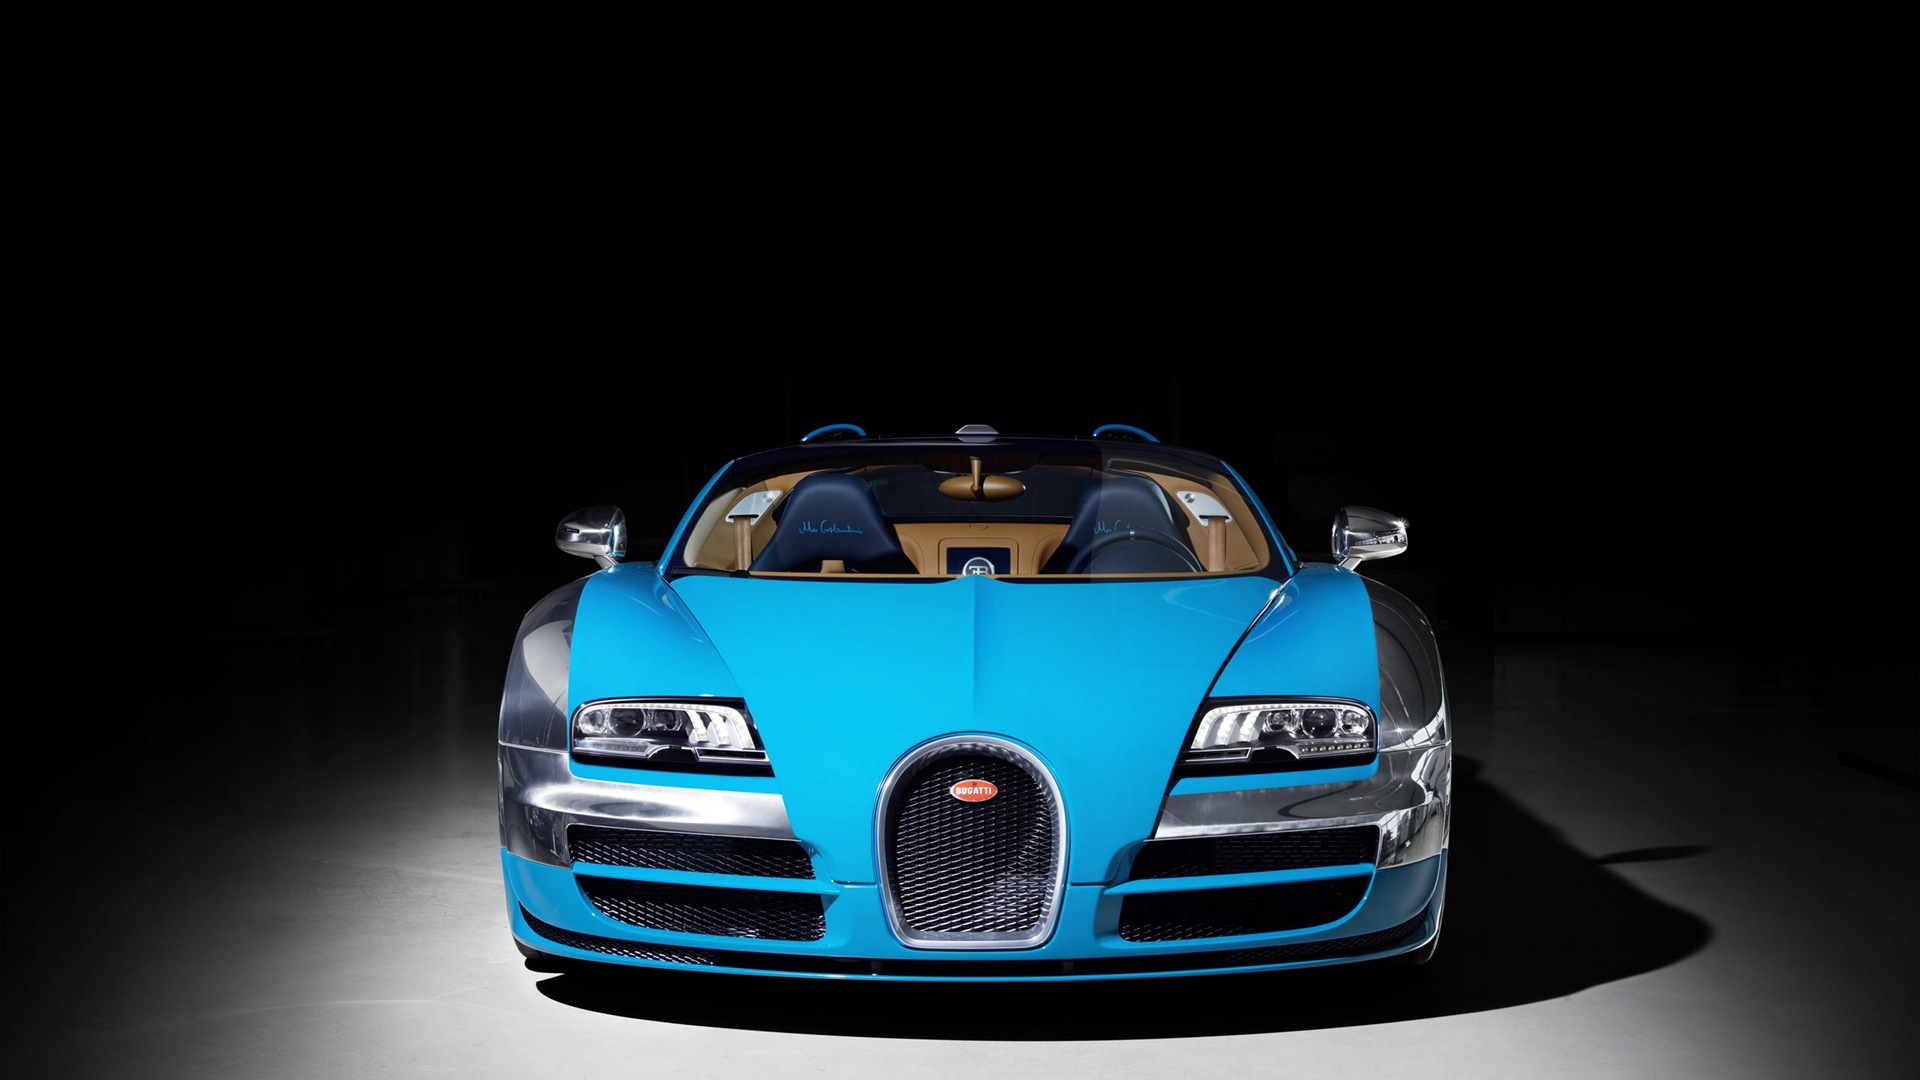 2013 Bugatti Veyron 16.4 Grand Sport Vitesse supercar fondos de pantalla de alta definición #2 - 1920x1080